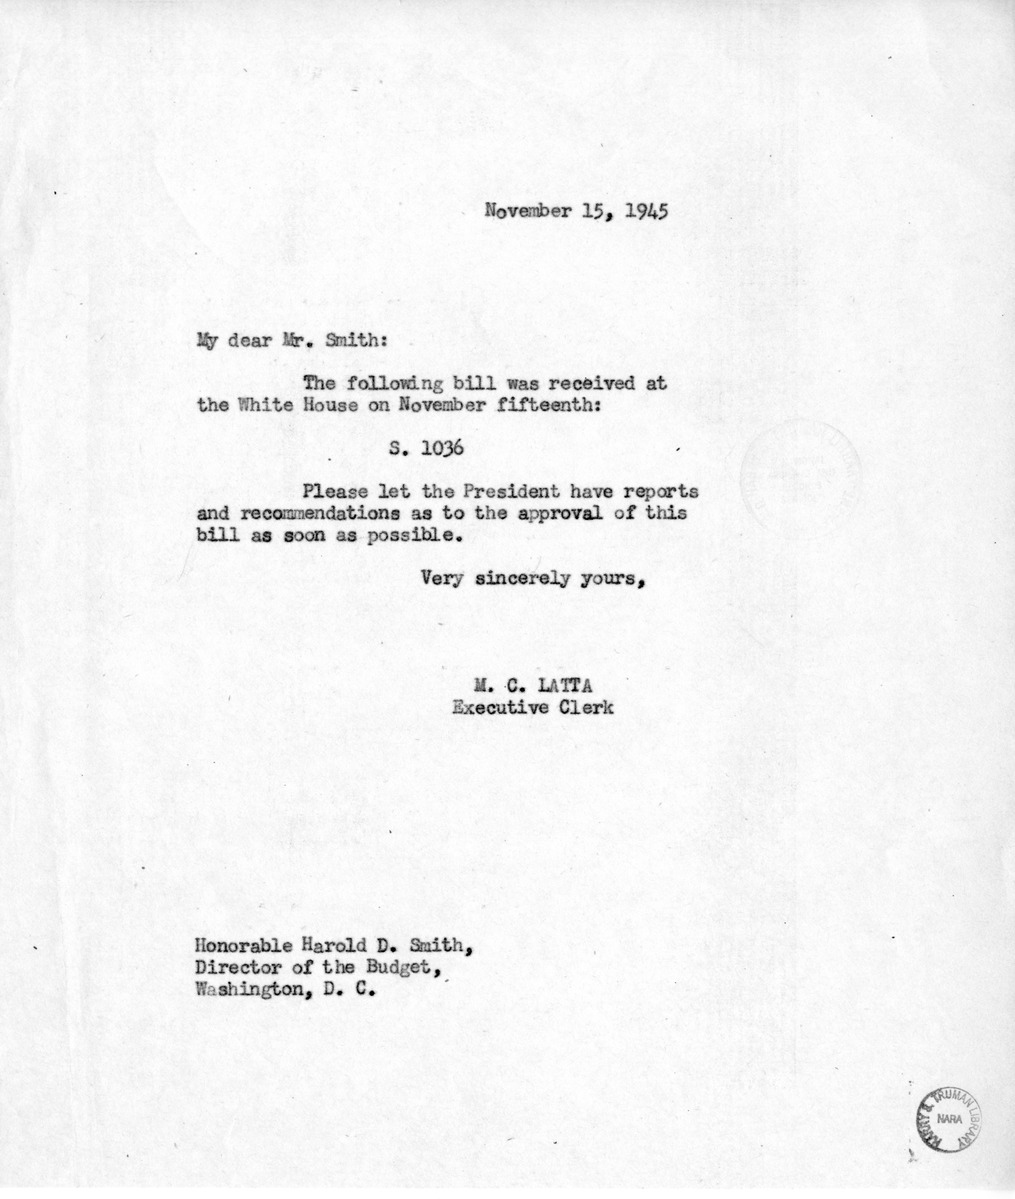 Memorandum From M.C. Latta to Harold D. Smith